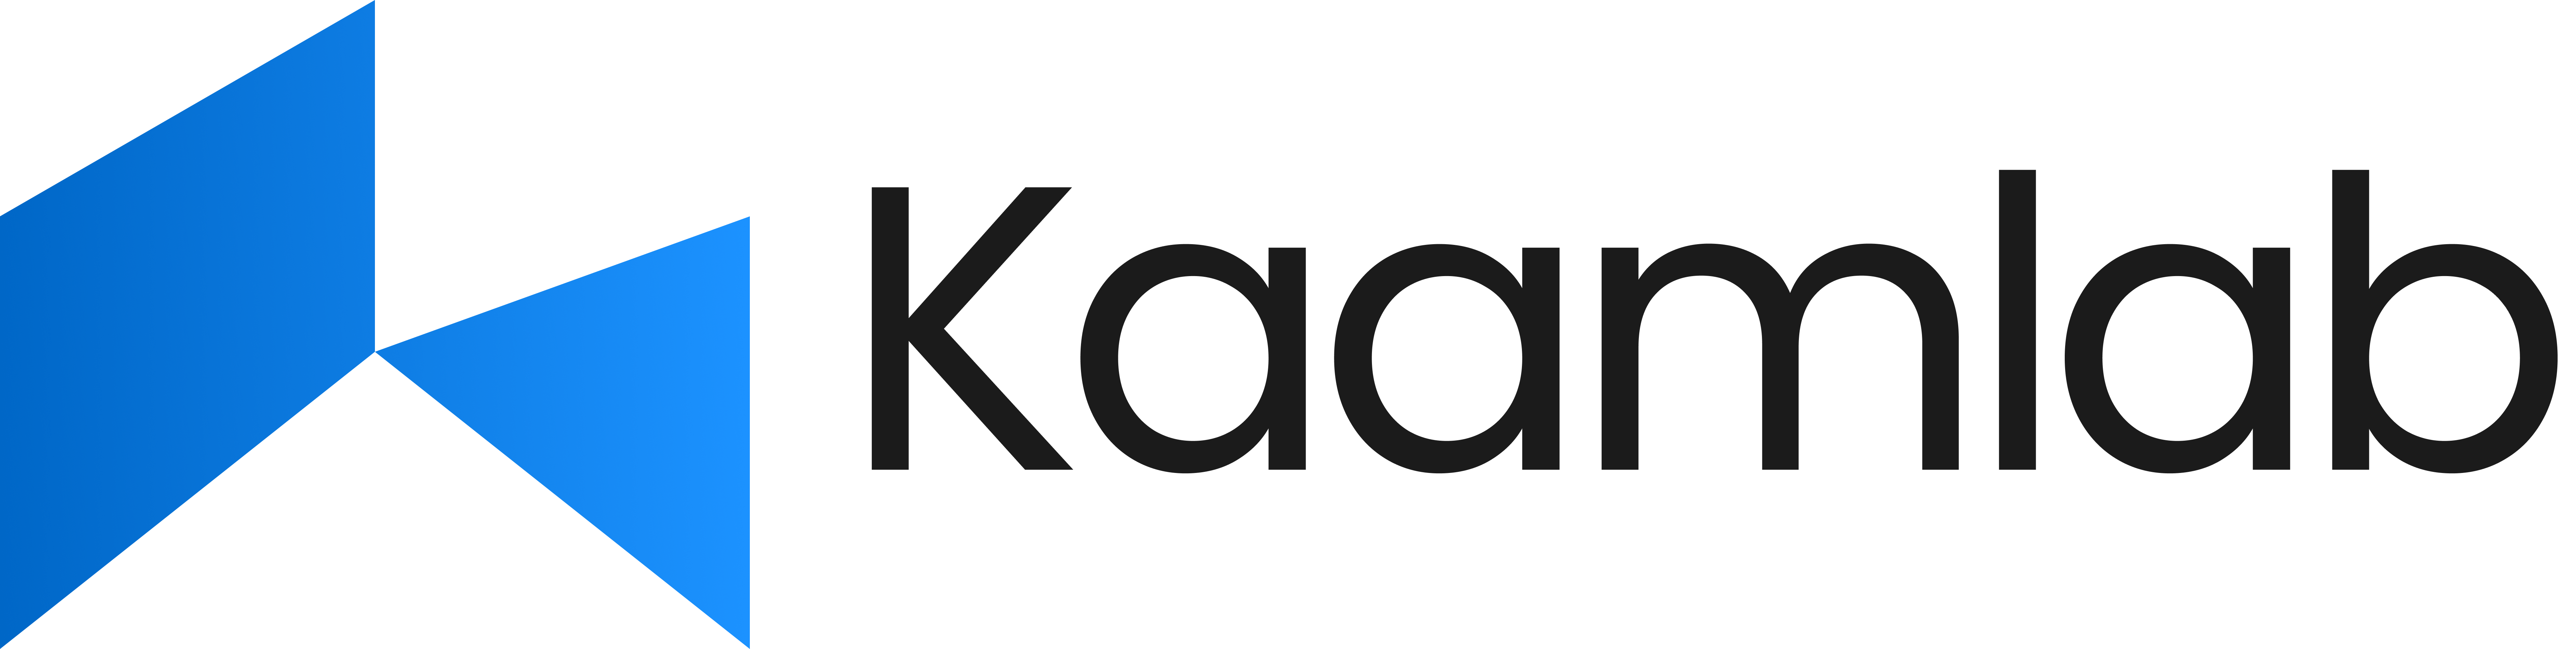 Kaamlab Logo - Black